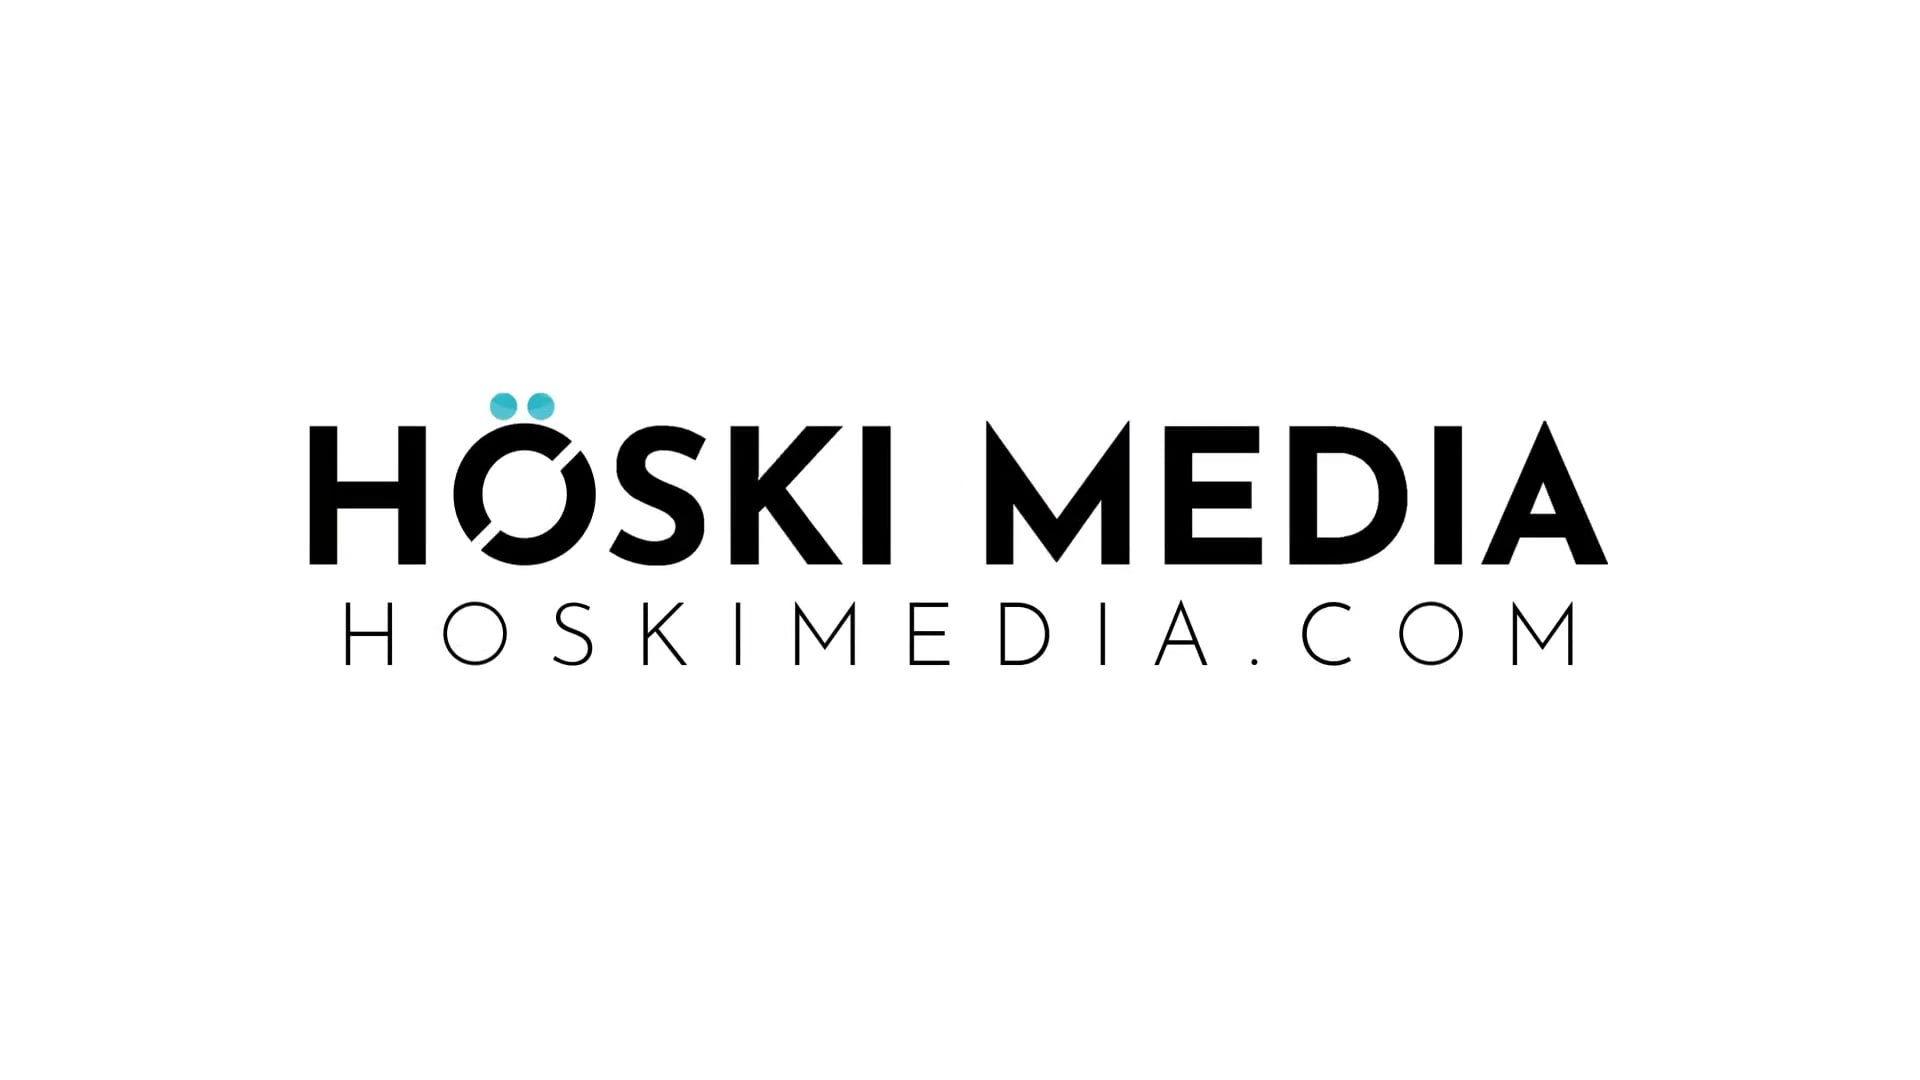 Hoski Media Logo Sound Bite